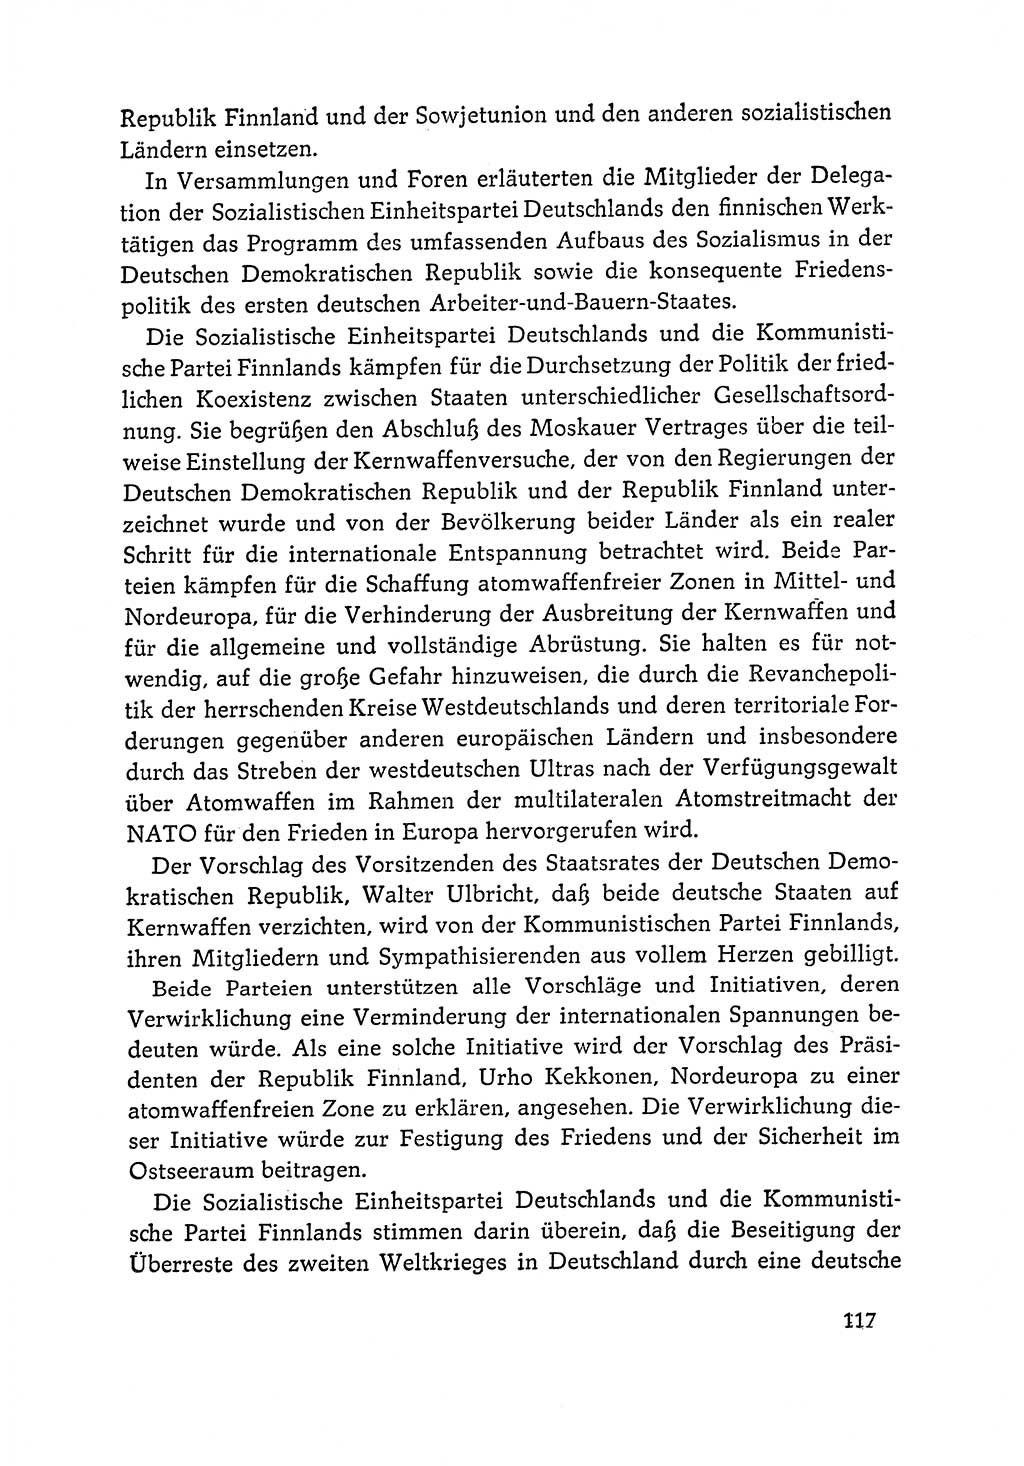 Dokumente der Sozialistischen Einheitspartei Deutschlands (SED) [Deutsche Demokratische Republik (DDR)] 1964-1965, Seite 117 (Dok. SED DDR 1964-1965, S. 117)